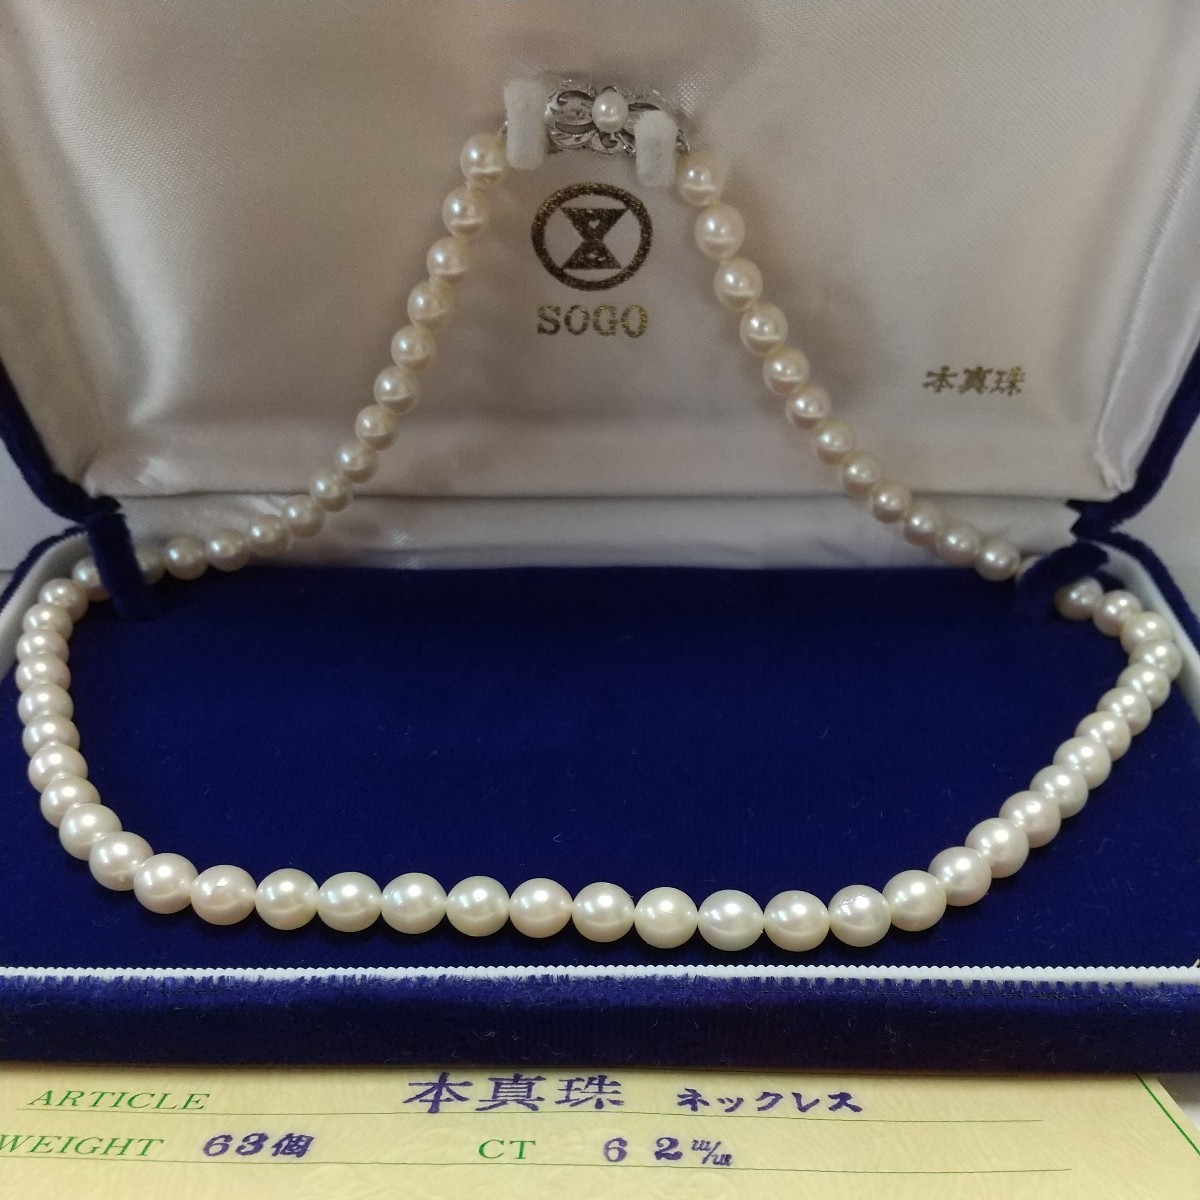 本真珠ネックレス 留め具部分SILVER刻印あり 艶やかパール 42㎝ 6.2